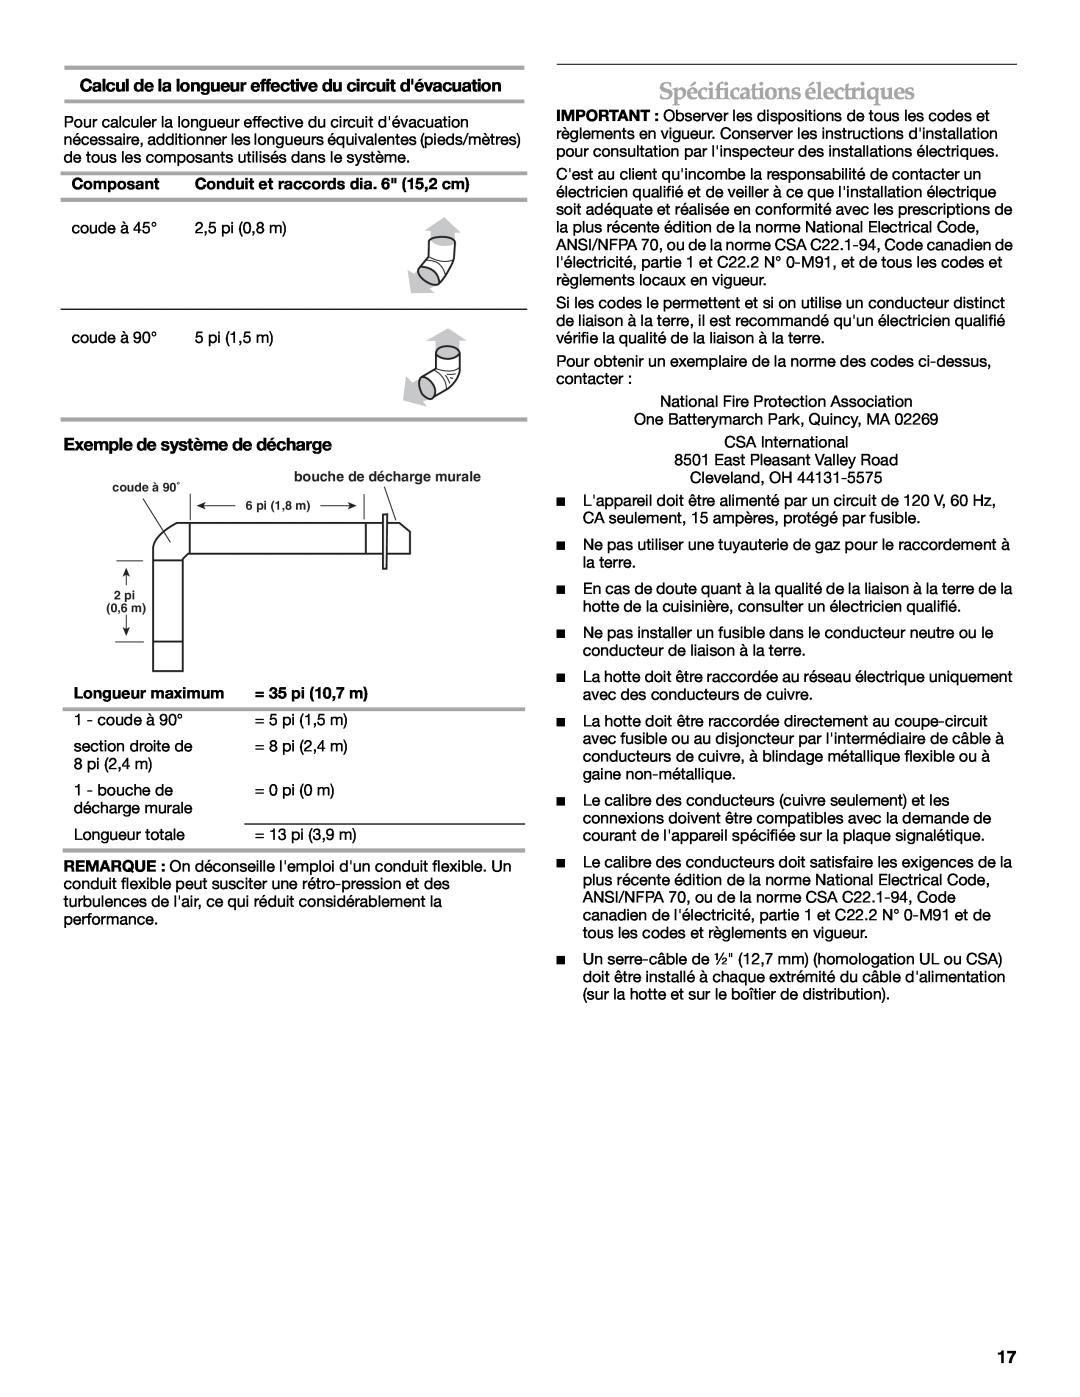 KitchenAid 2005 Spécifications électriques, Calcul de la longueur effective du circuit dévacuation, Composant, coude à 